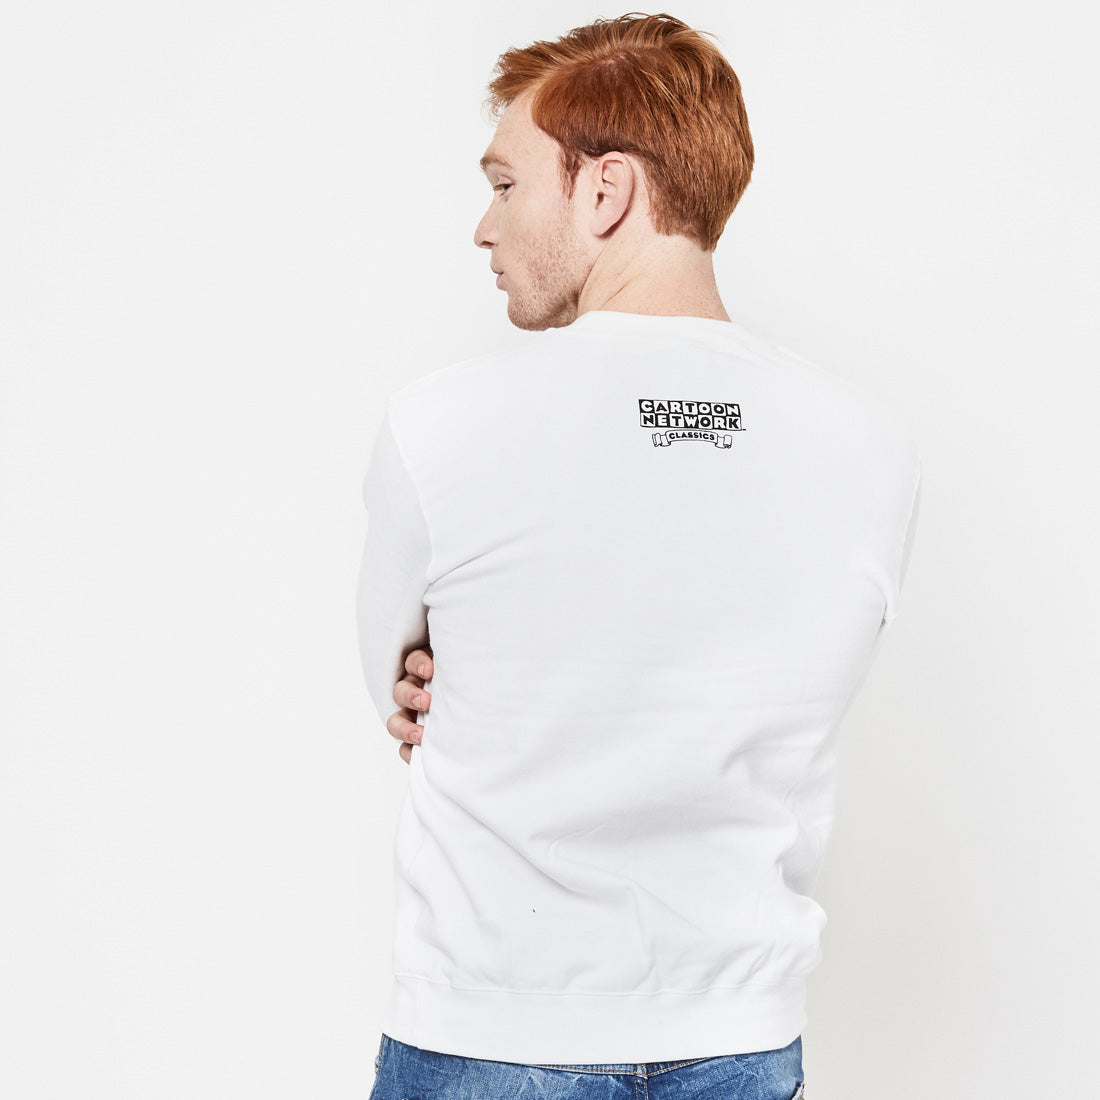 Sweatshirt Dexter Lab White